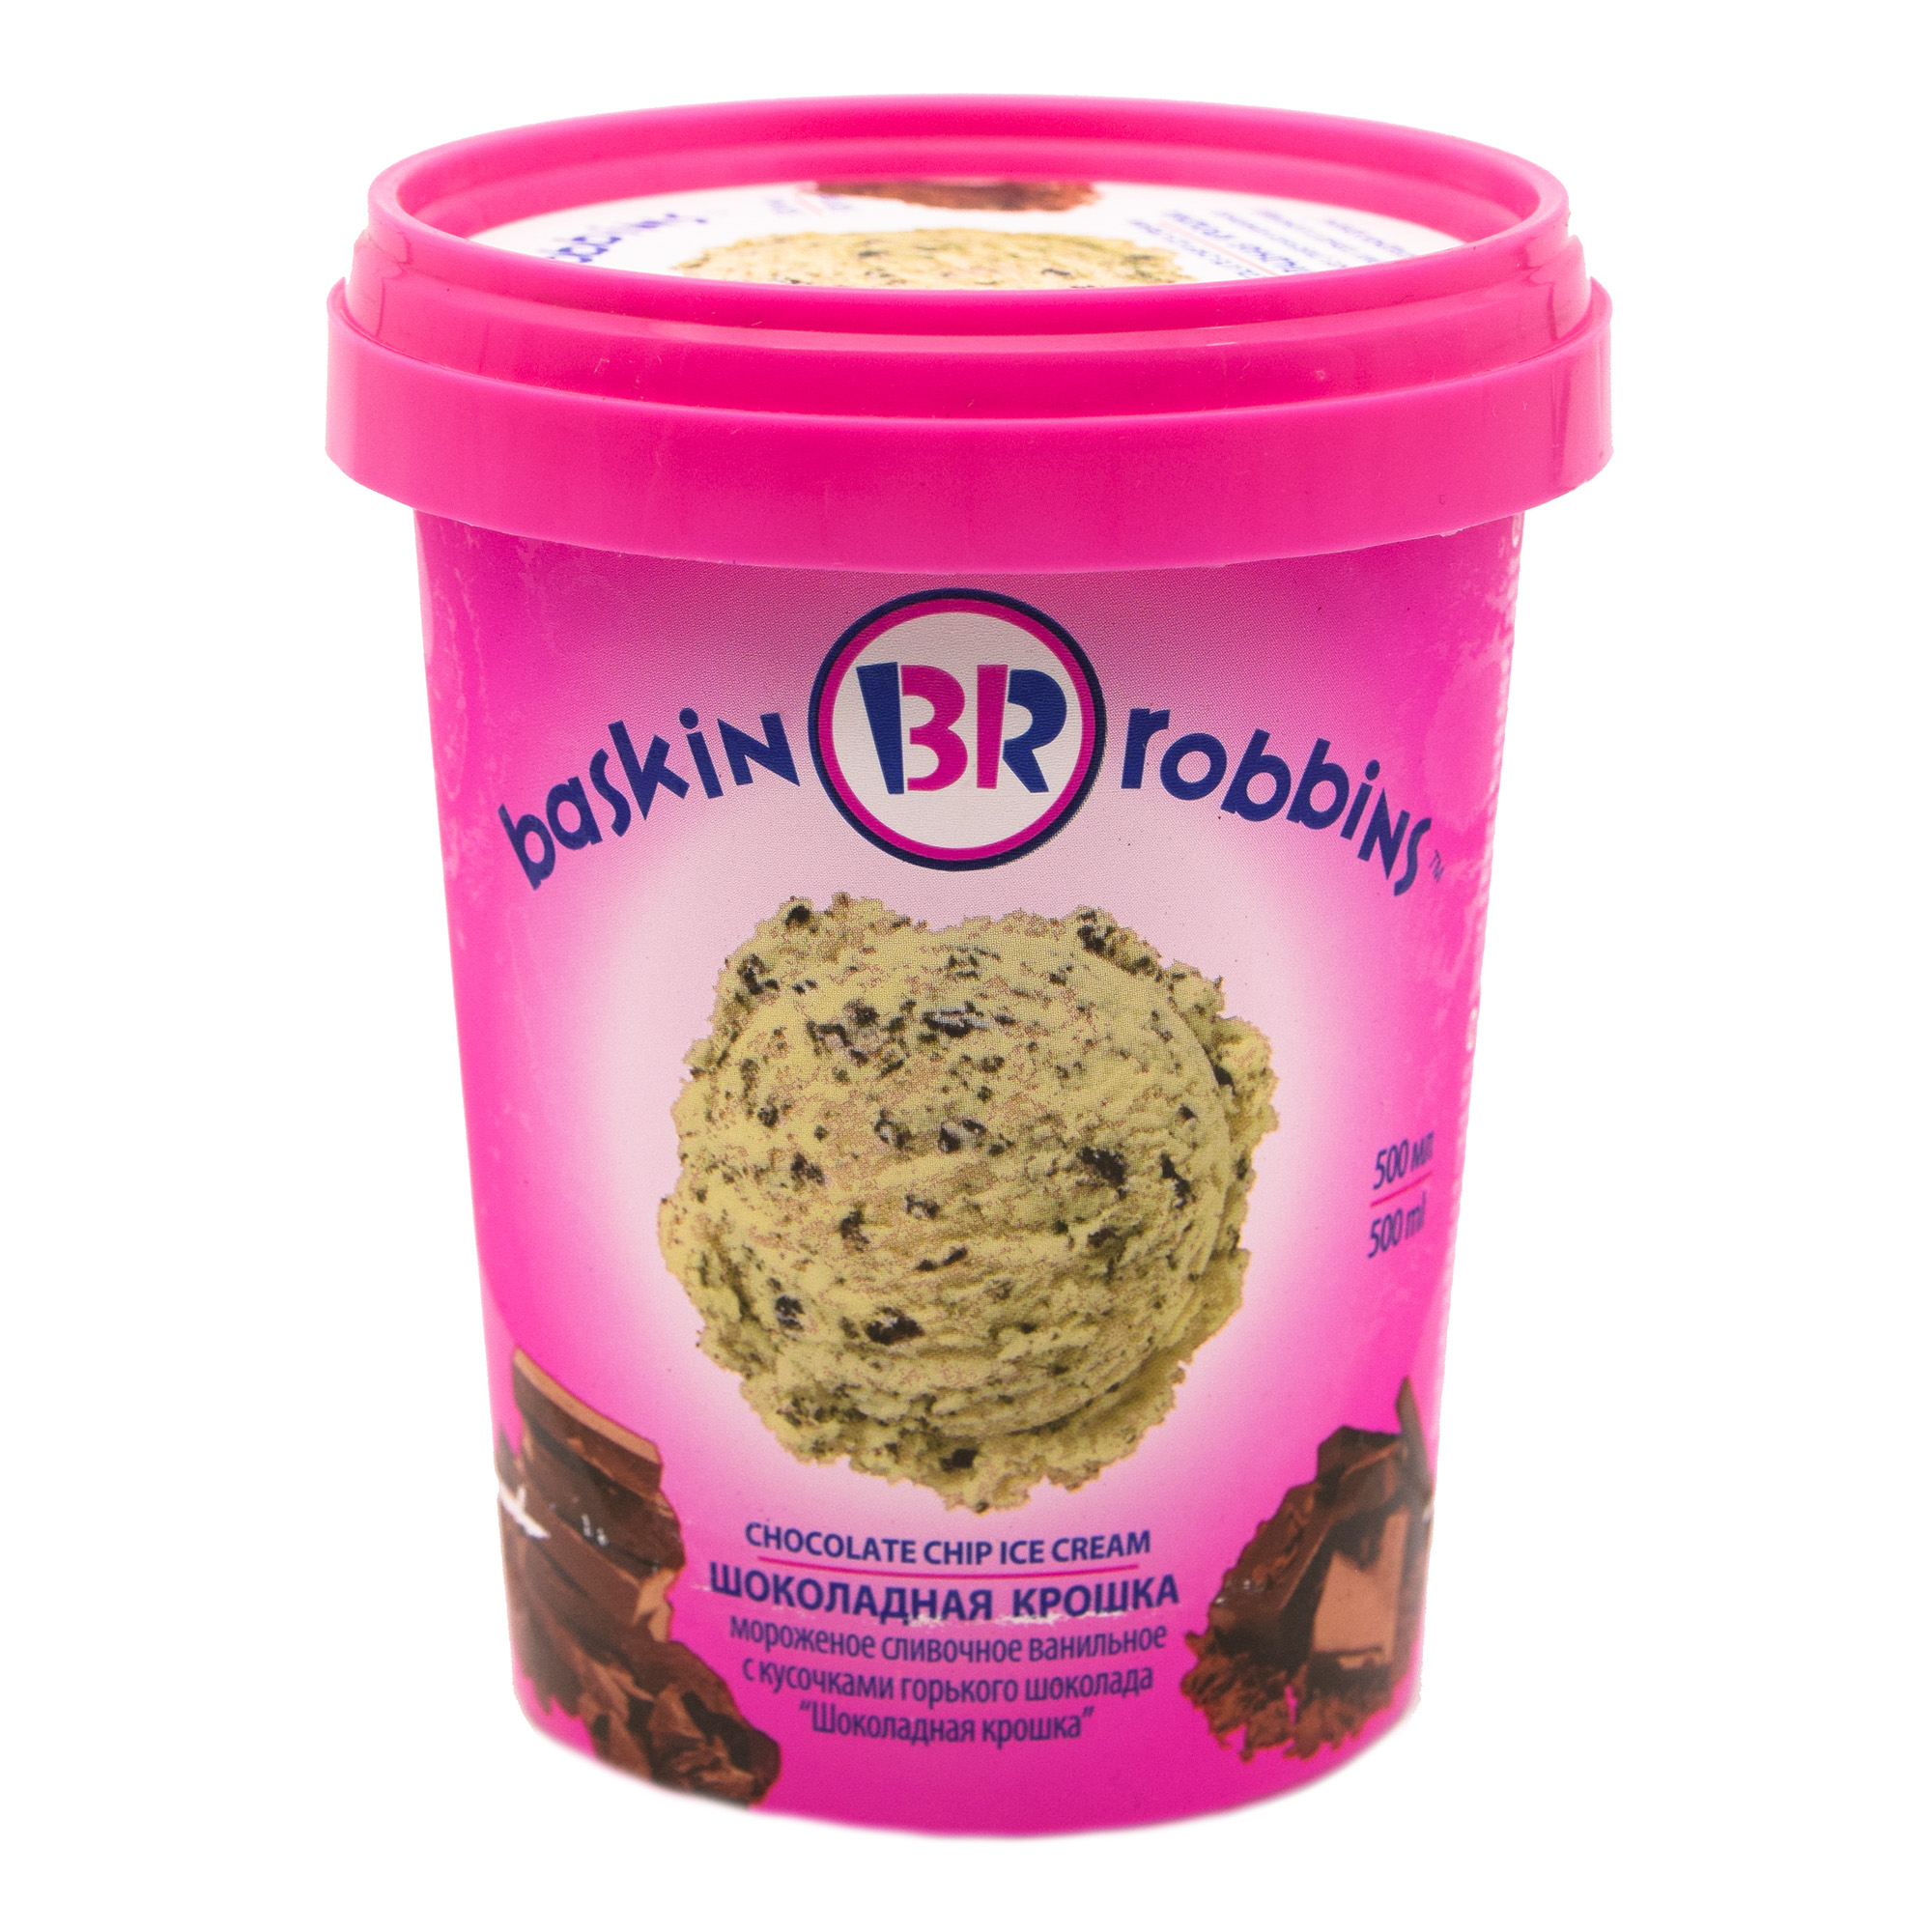 фото Мороженое сливочное baskin robbins шоколадная крошка бзмж 500 мл баскин роббинс